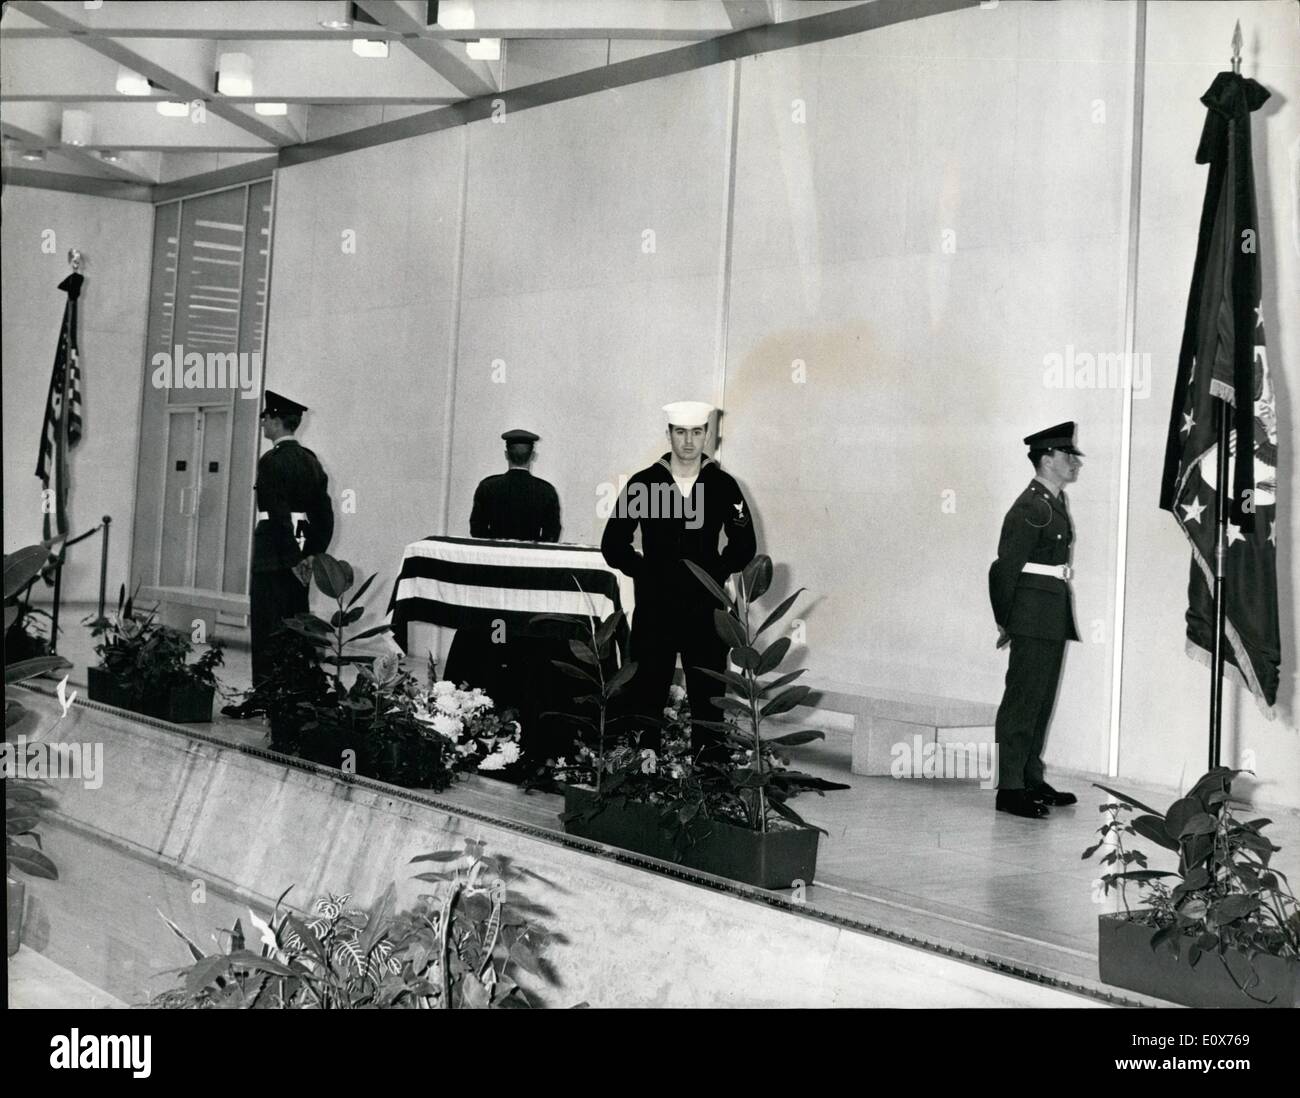 Juillet 07, 1965 - mort d'Adlai Stevenson. M. Adlai Stevenson, America's ambassadeur aux Nations Unies, qui était à Londres pour une visite privée, est mort dans une rue de Londres la nuit dernière. Il s'est effondré près de l'ambassade des États-Unis à Grosvenor Square. Photo : Keystone montre le cercueil contenant le corps d'Adlai Stevenson gisant dans l'ambassade des Etats-Unis d'aujourd'hui, avec des soldats américains et britanniques sur la garde. Une délégation spéciale va prendre le corps de nouveau aux États-Unis H/Keystone Banque D'Images